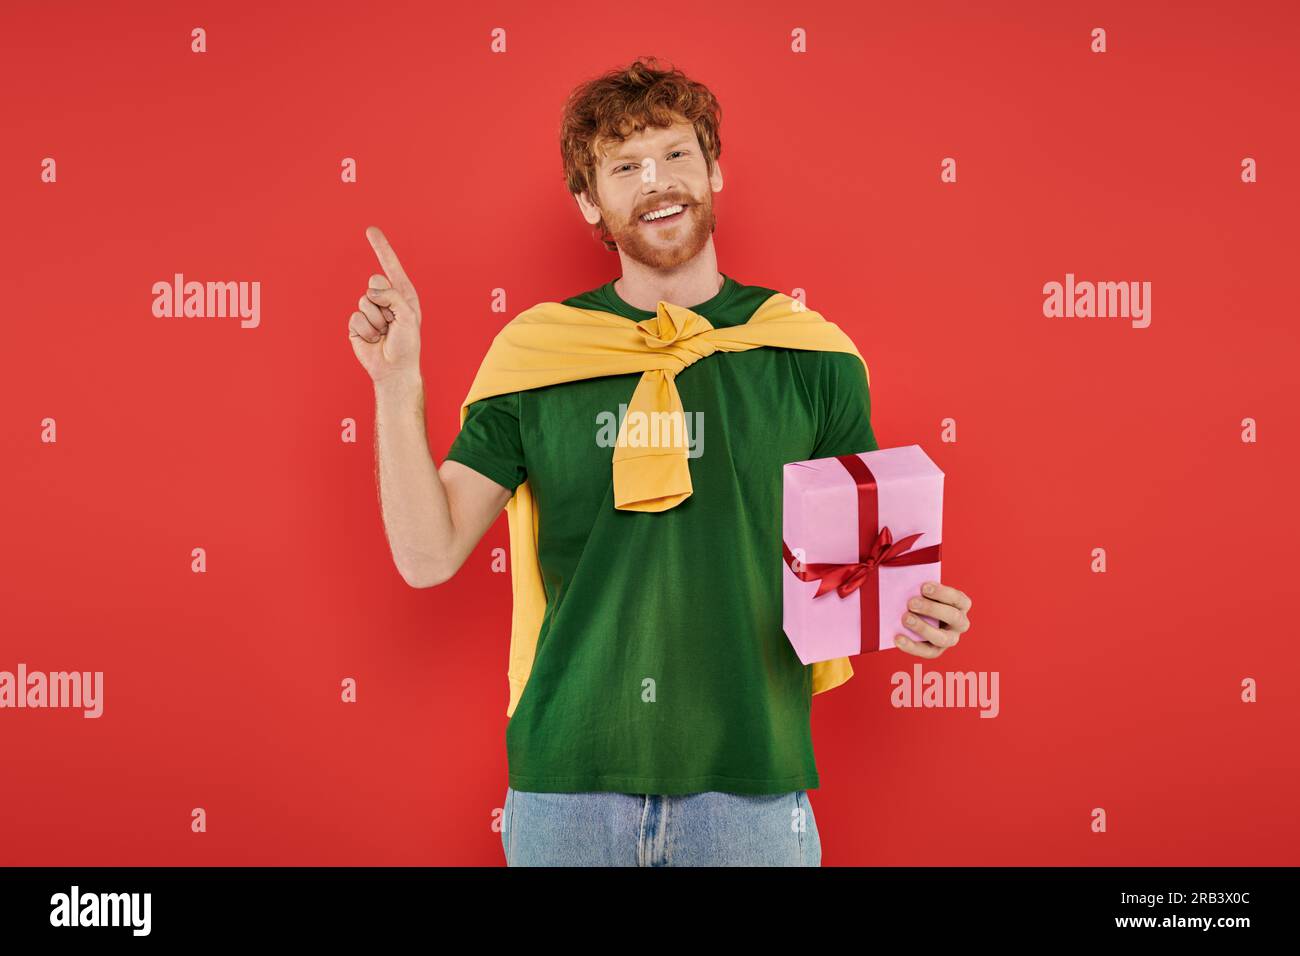 Feier, fröhlicher rothaariger Mann mit Bart in lässiger Kleidung auf Korallenhintergrund, mit Geschenkbox, festlichen Anlässen, Geschenk, Mode und Trend Stockfoto